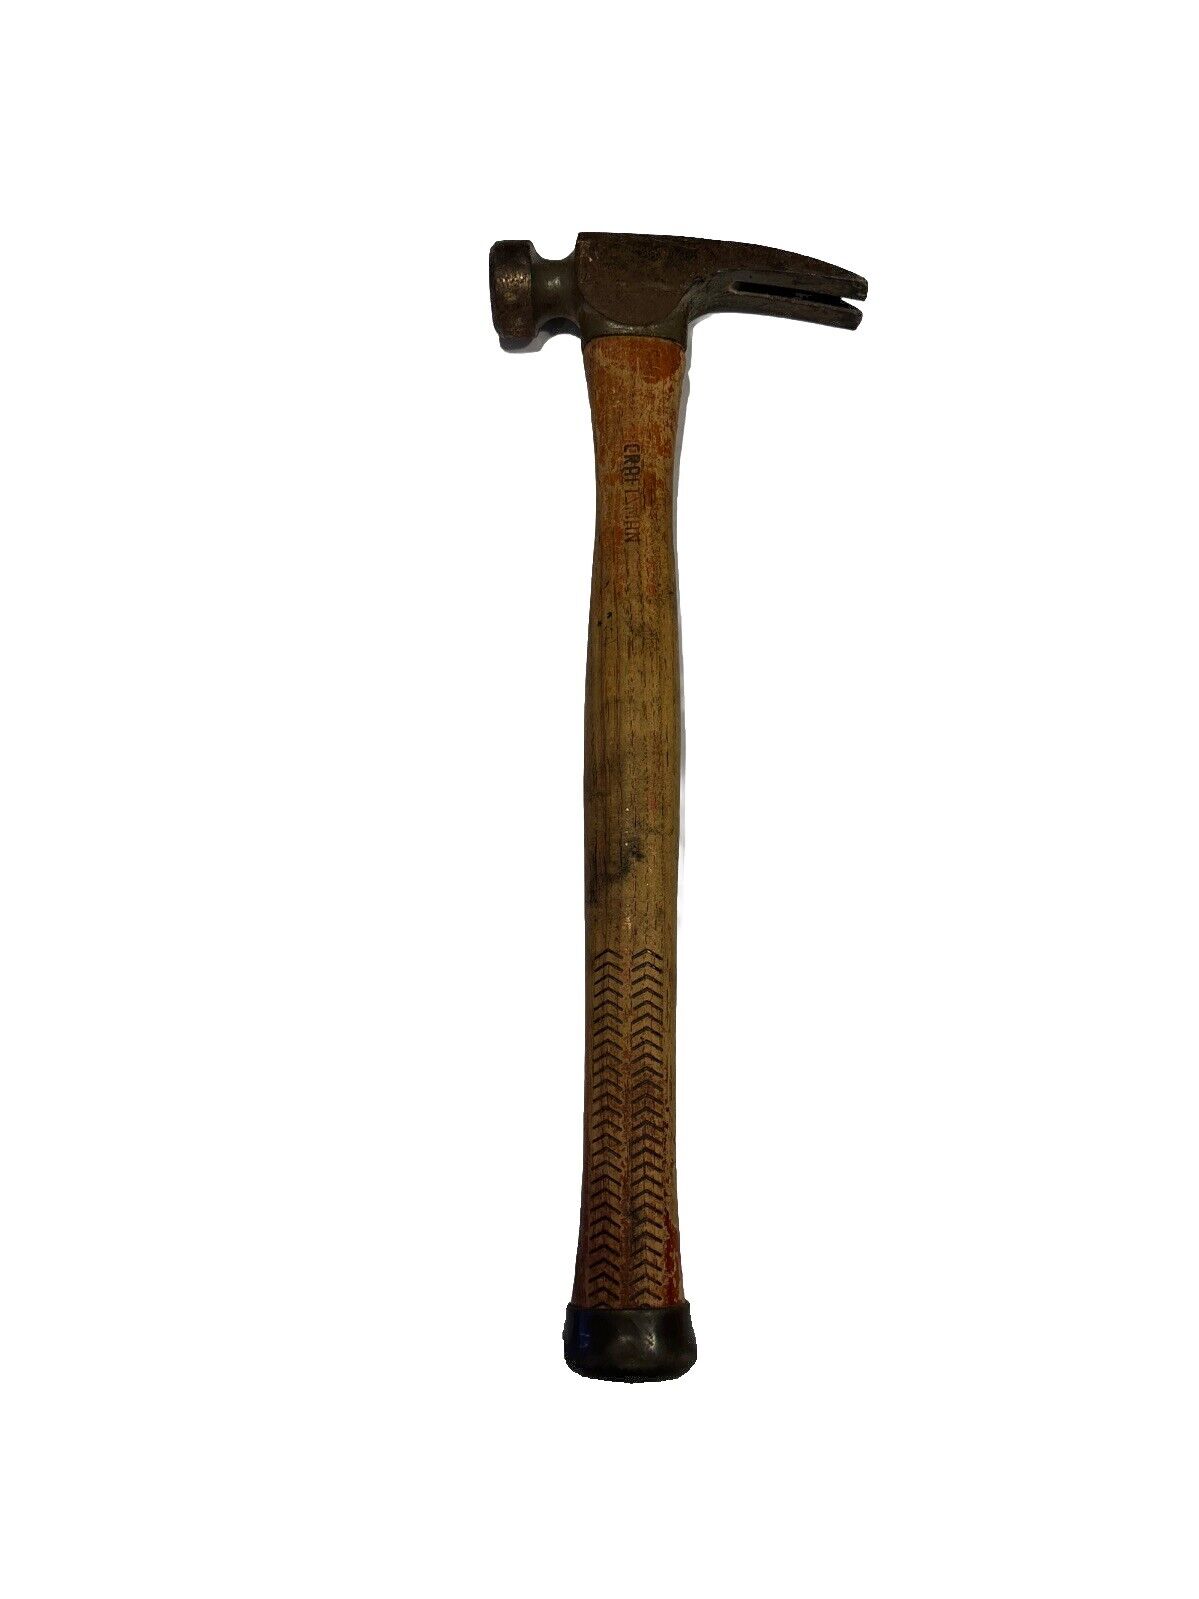 Vintage Genuine Craftsman Carpenter Claw Hammer #38182 - 23 oz.